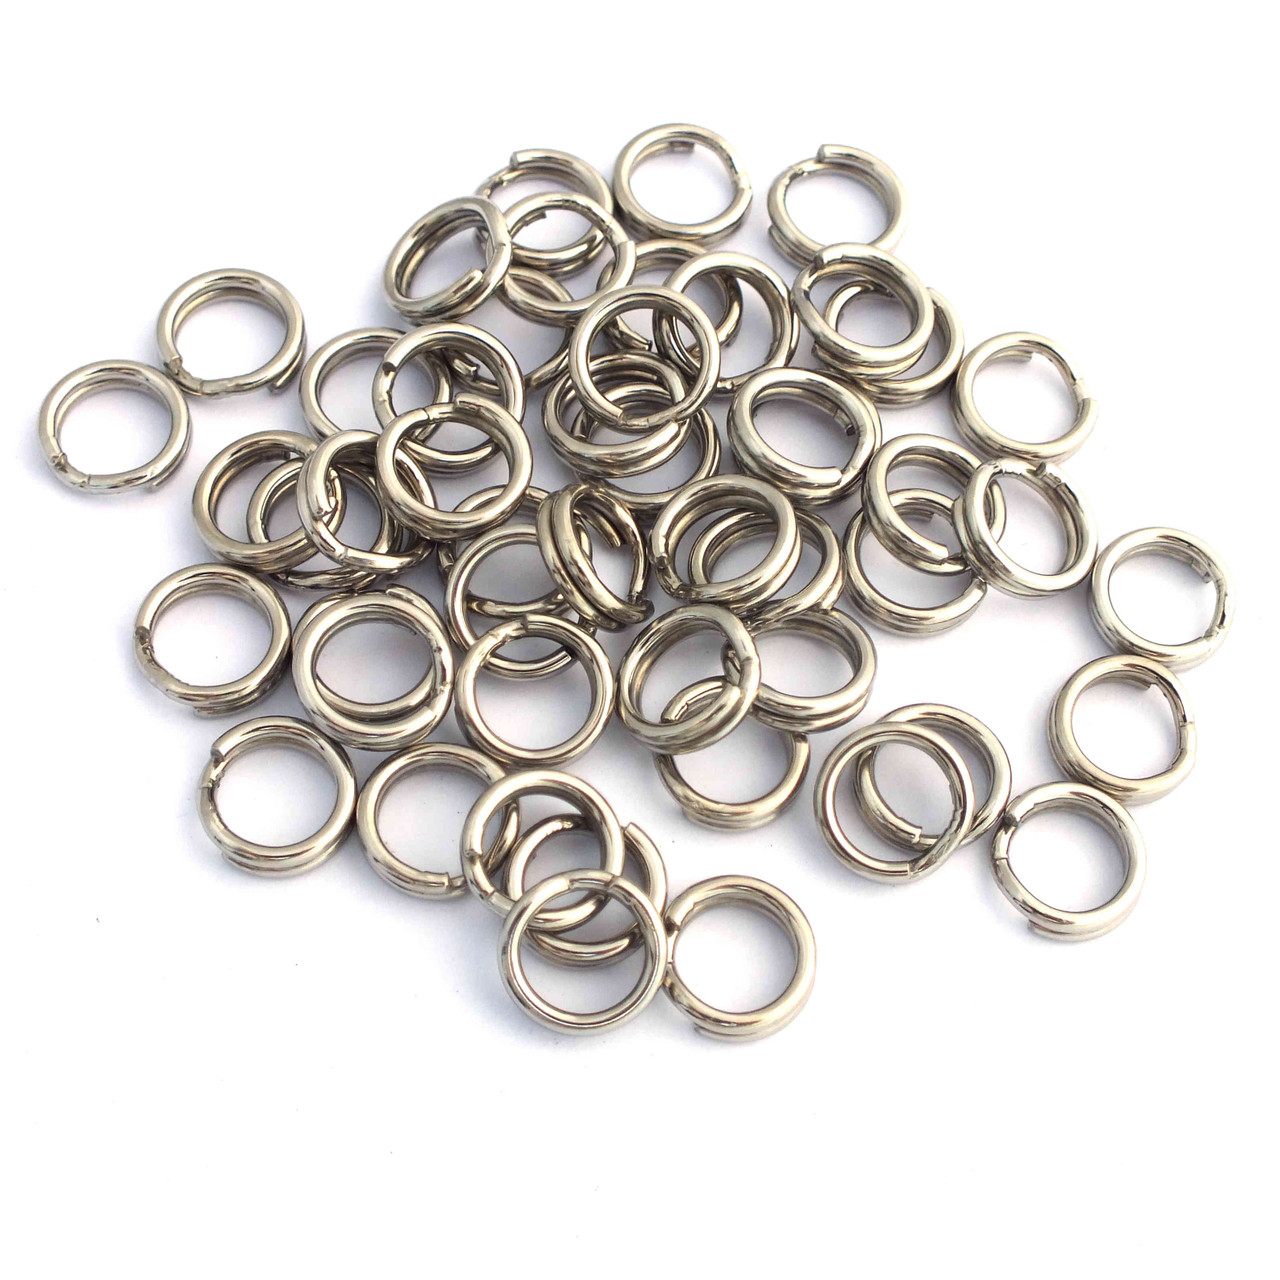 50 Stainless Steel Split Rings 10mm 50lb Test